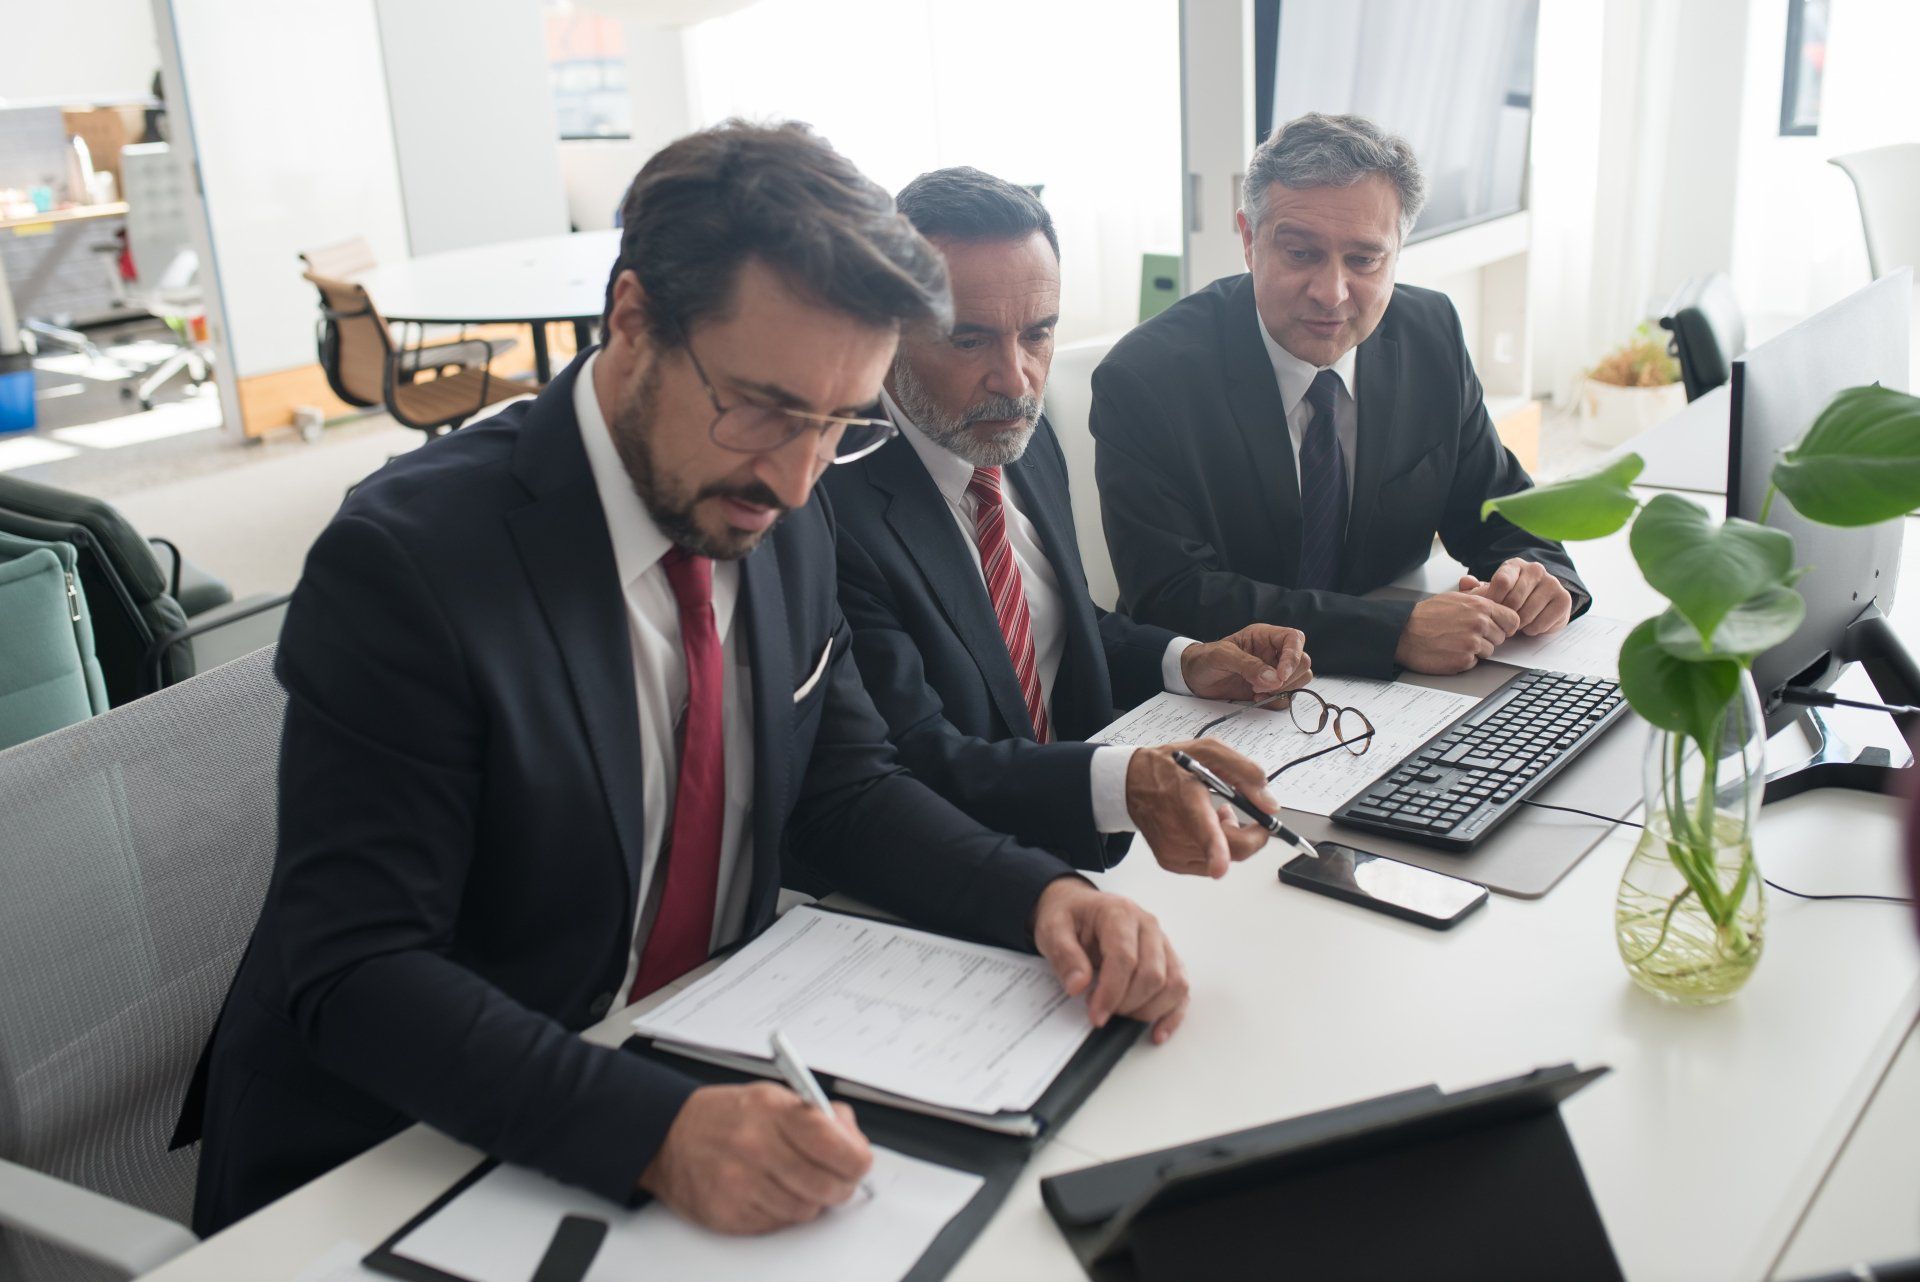 três homens de terno e gravata estão sentados em uma mesa em frente a um computador.